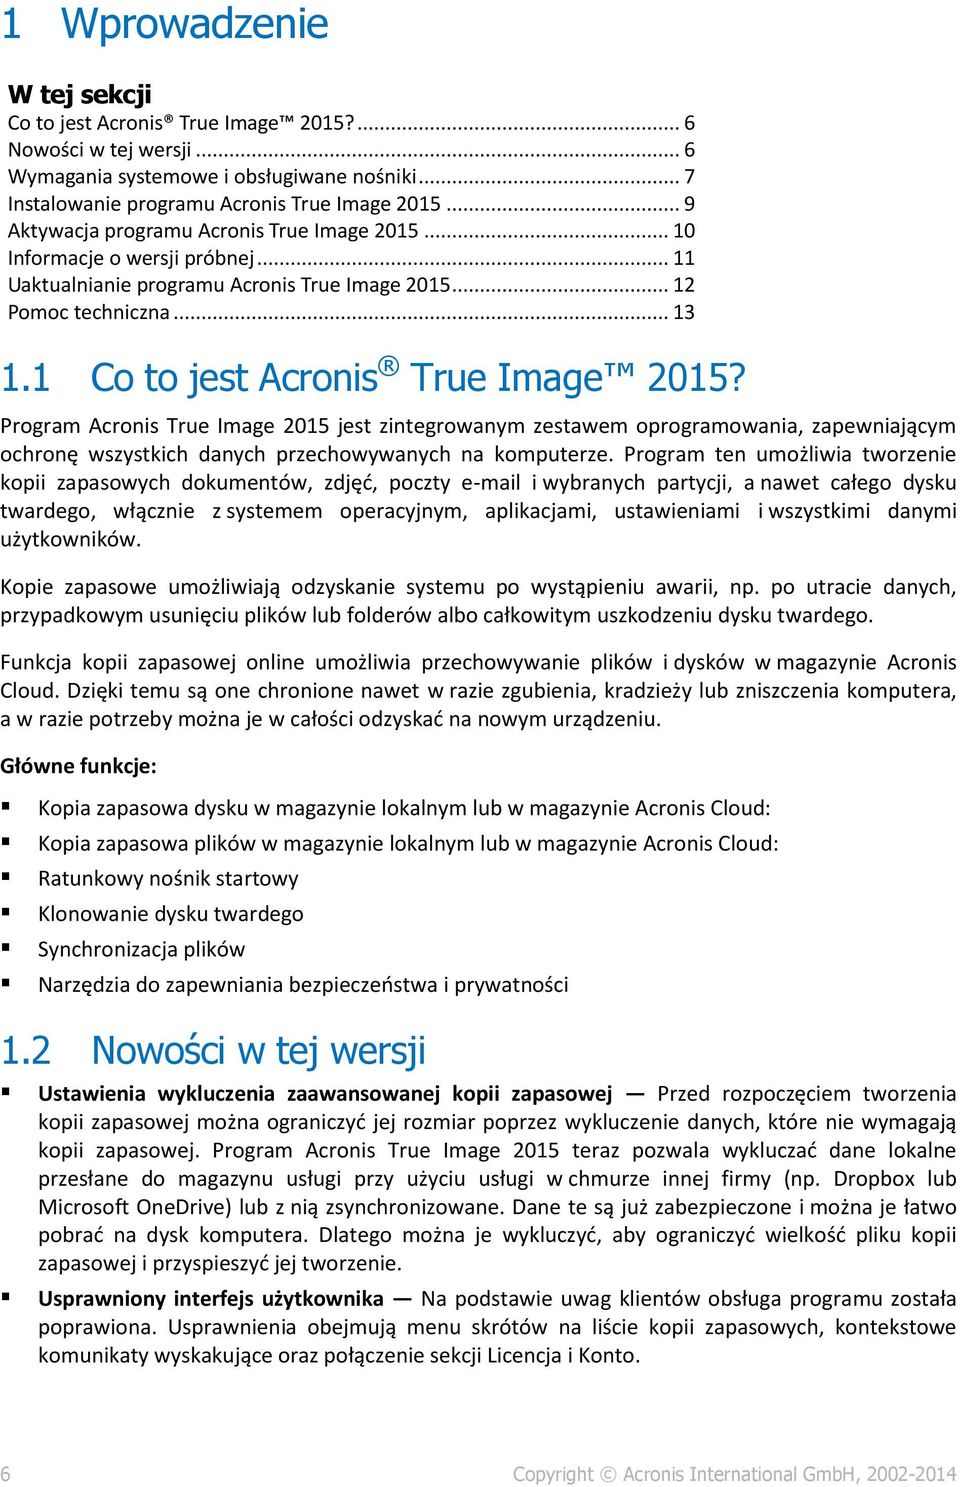 1 Co to jest Acronis True Image 2015? Program Acronis True Image 2015 jest zintegrowanym zestawem oprogramowania, zapewniającym ochronę wszystkich danych przechowywanych na komputerze.